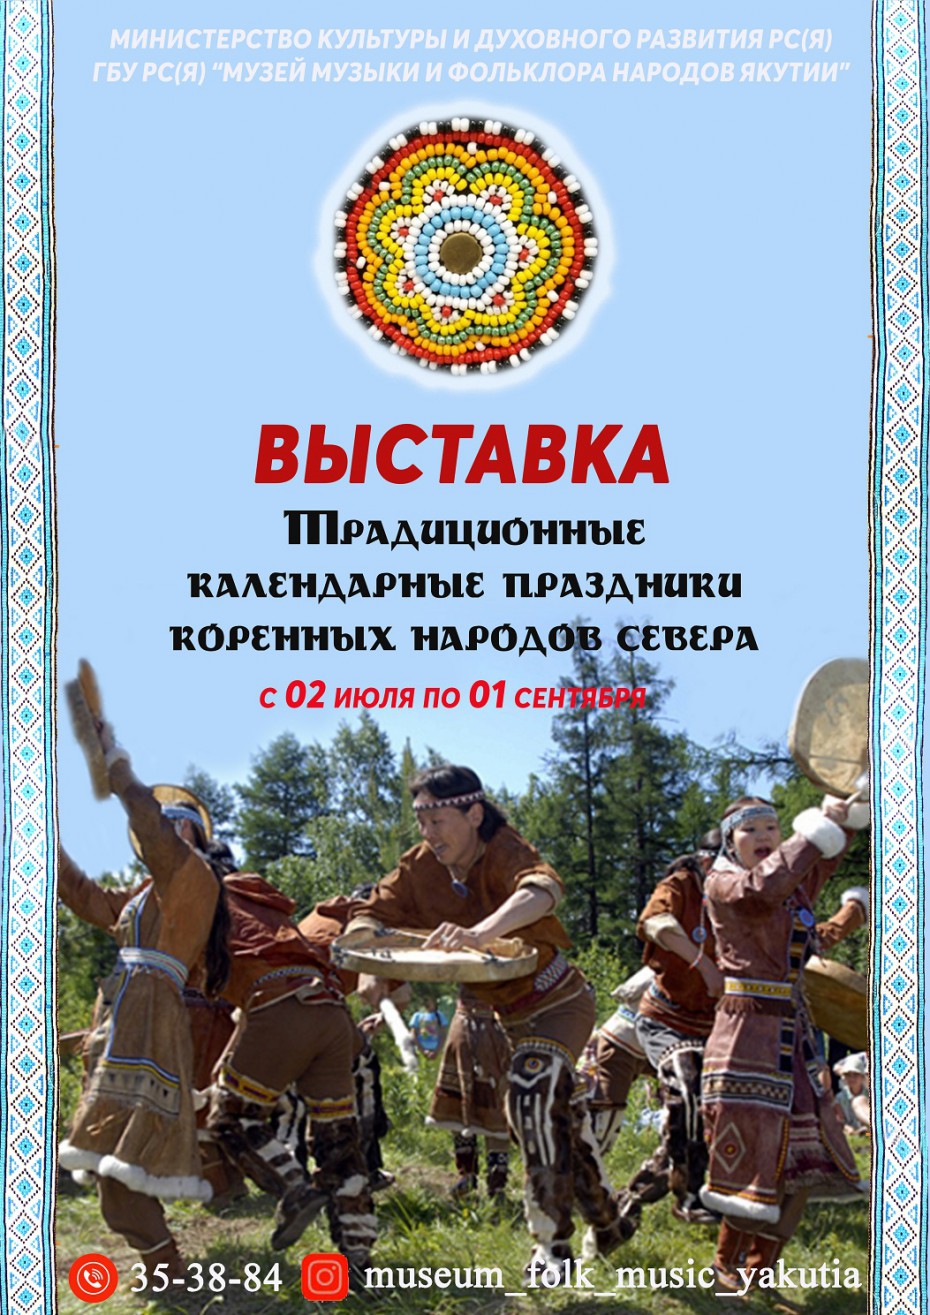 В Якутске открылась выставка "Календарные праздники коренных народов Крайнего Севера"